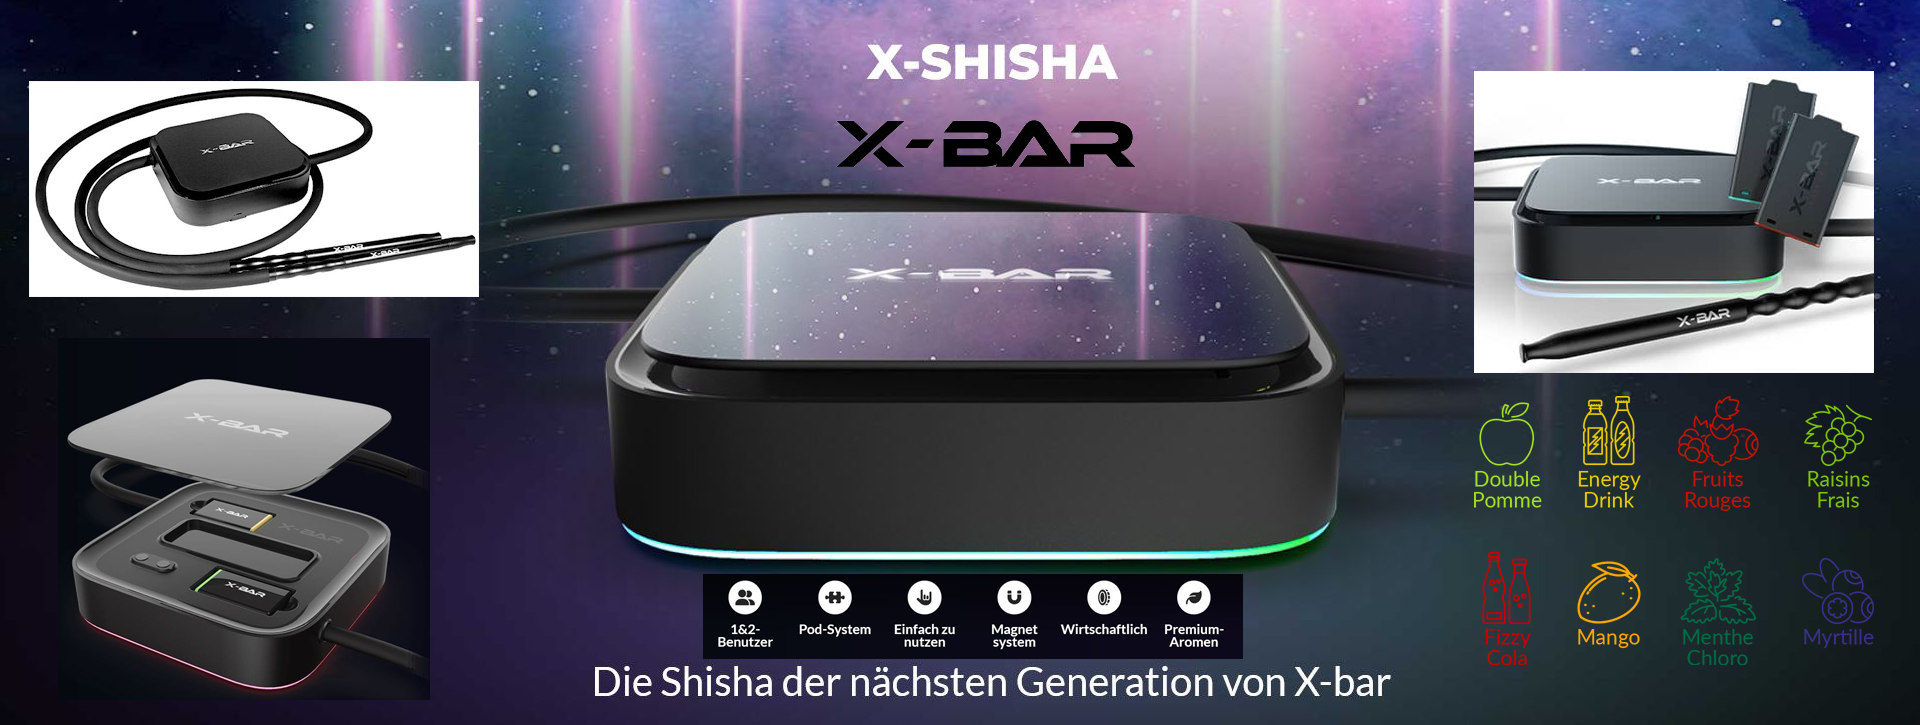 16 X-Bar X-SHISHA